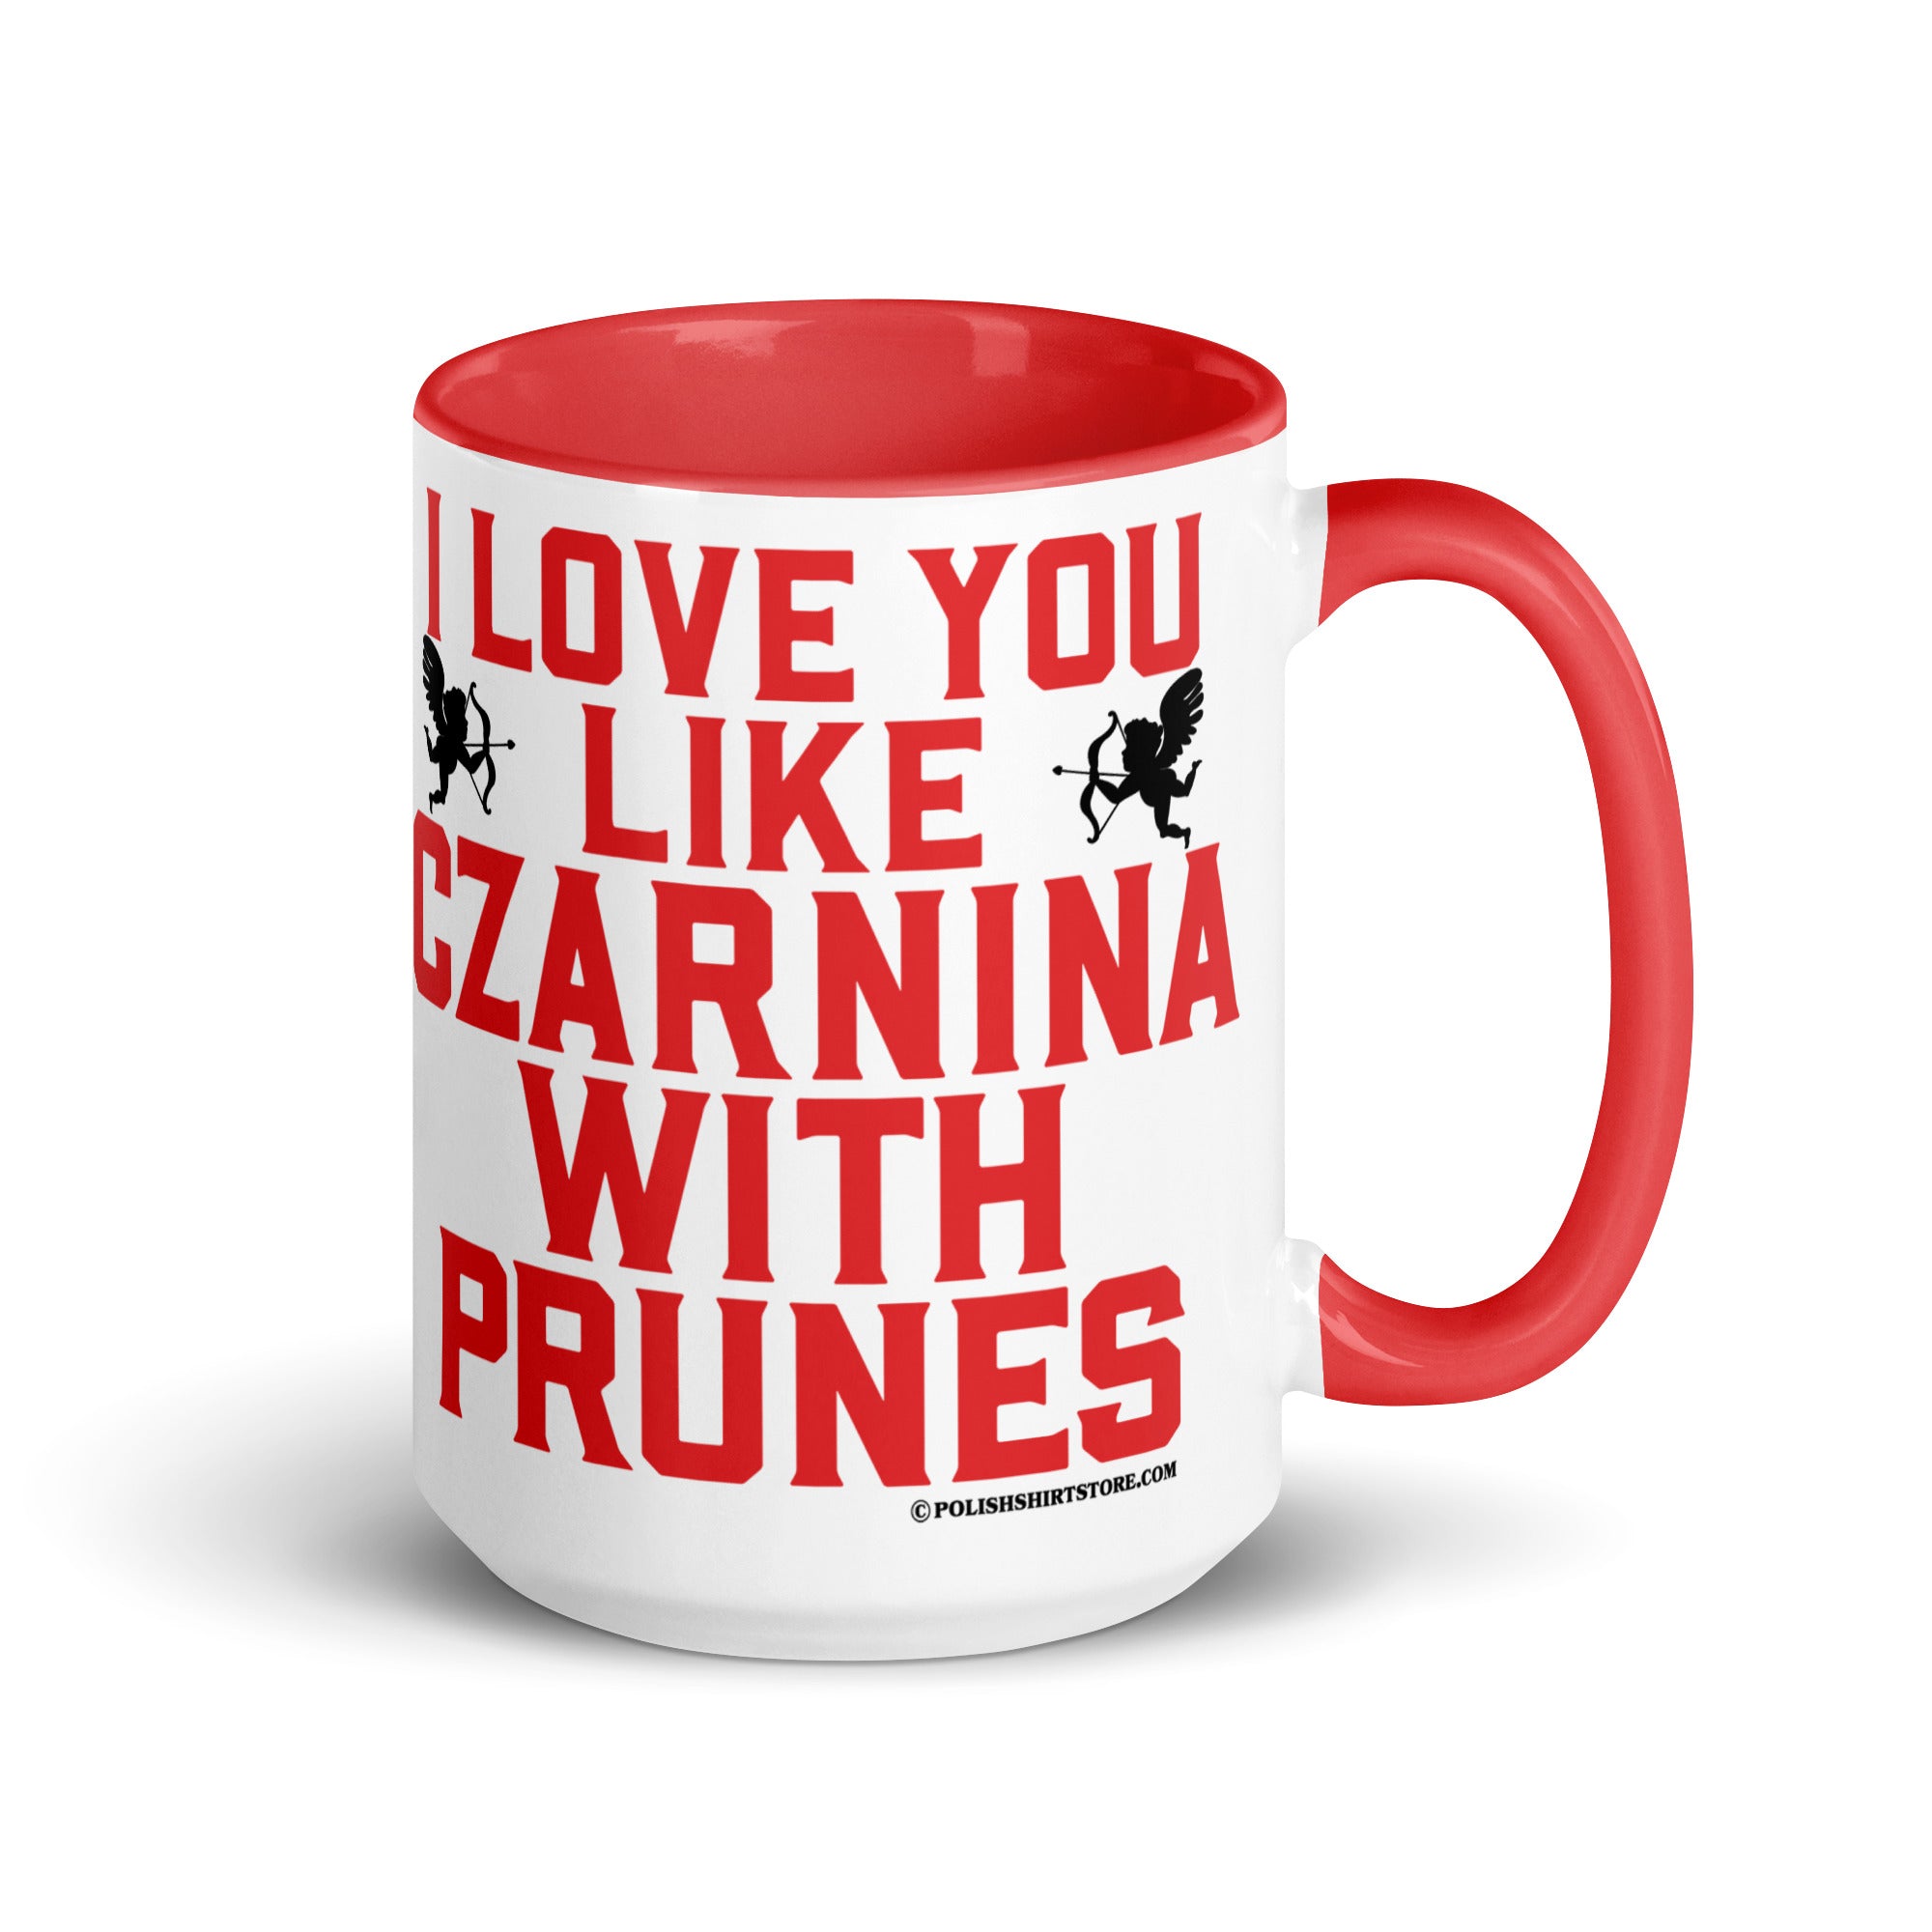 I Love You Like Czarnina With Prunes Coffee Mug with Color Inside  Polish Shirt Store Red 15 oz 